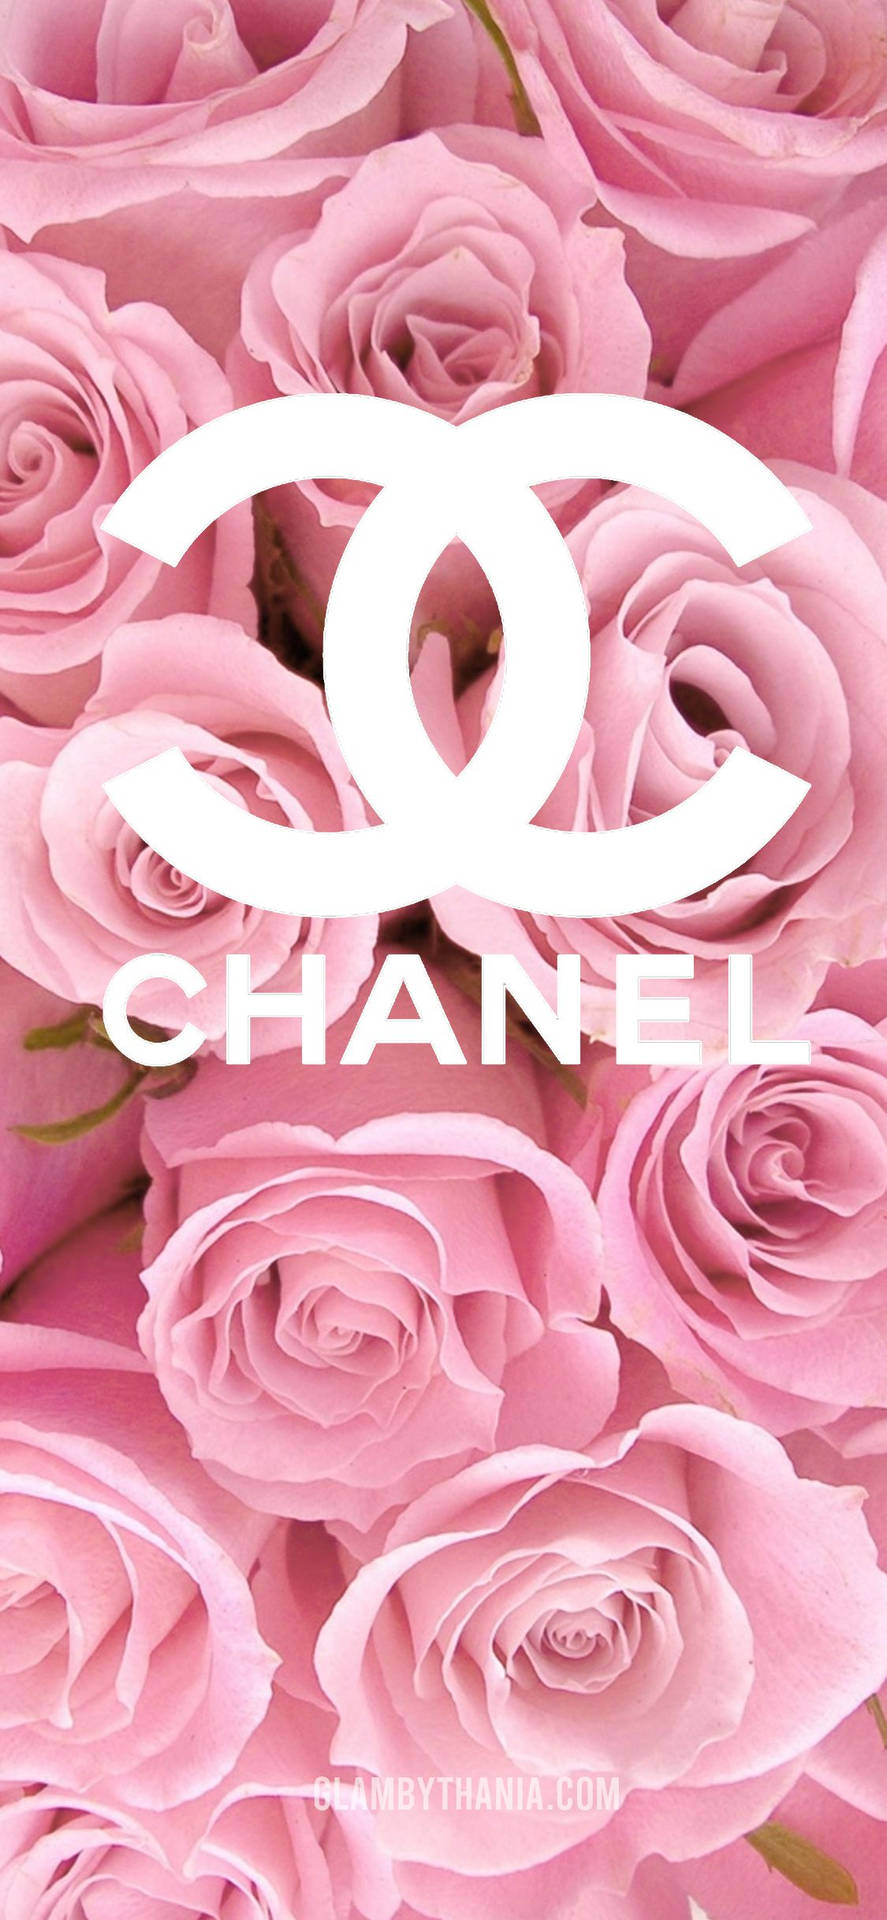 Einerosafarbene Version Eines Der Weltweit Ikonischsten Mode-logos, Das Chanel-logo. Wallpaper